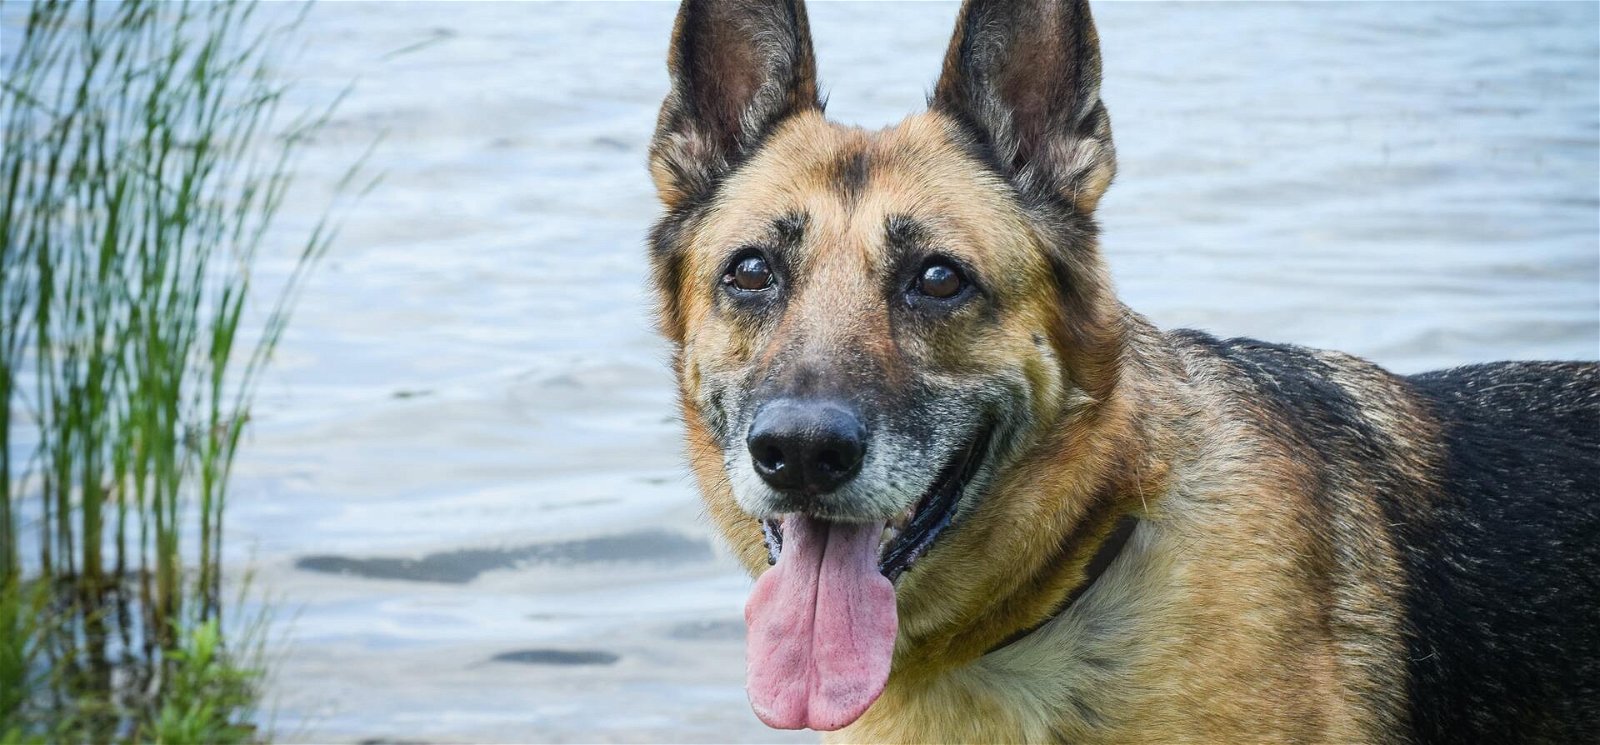 Kvíz: tudod, hogy hívták a leghíresebb magyar kutyát? Imádni fogod az összes kérdést